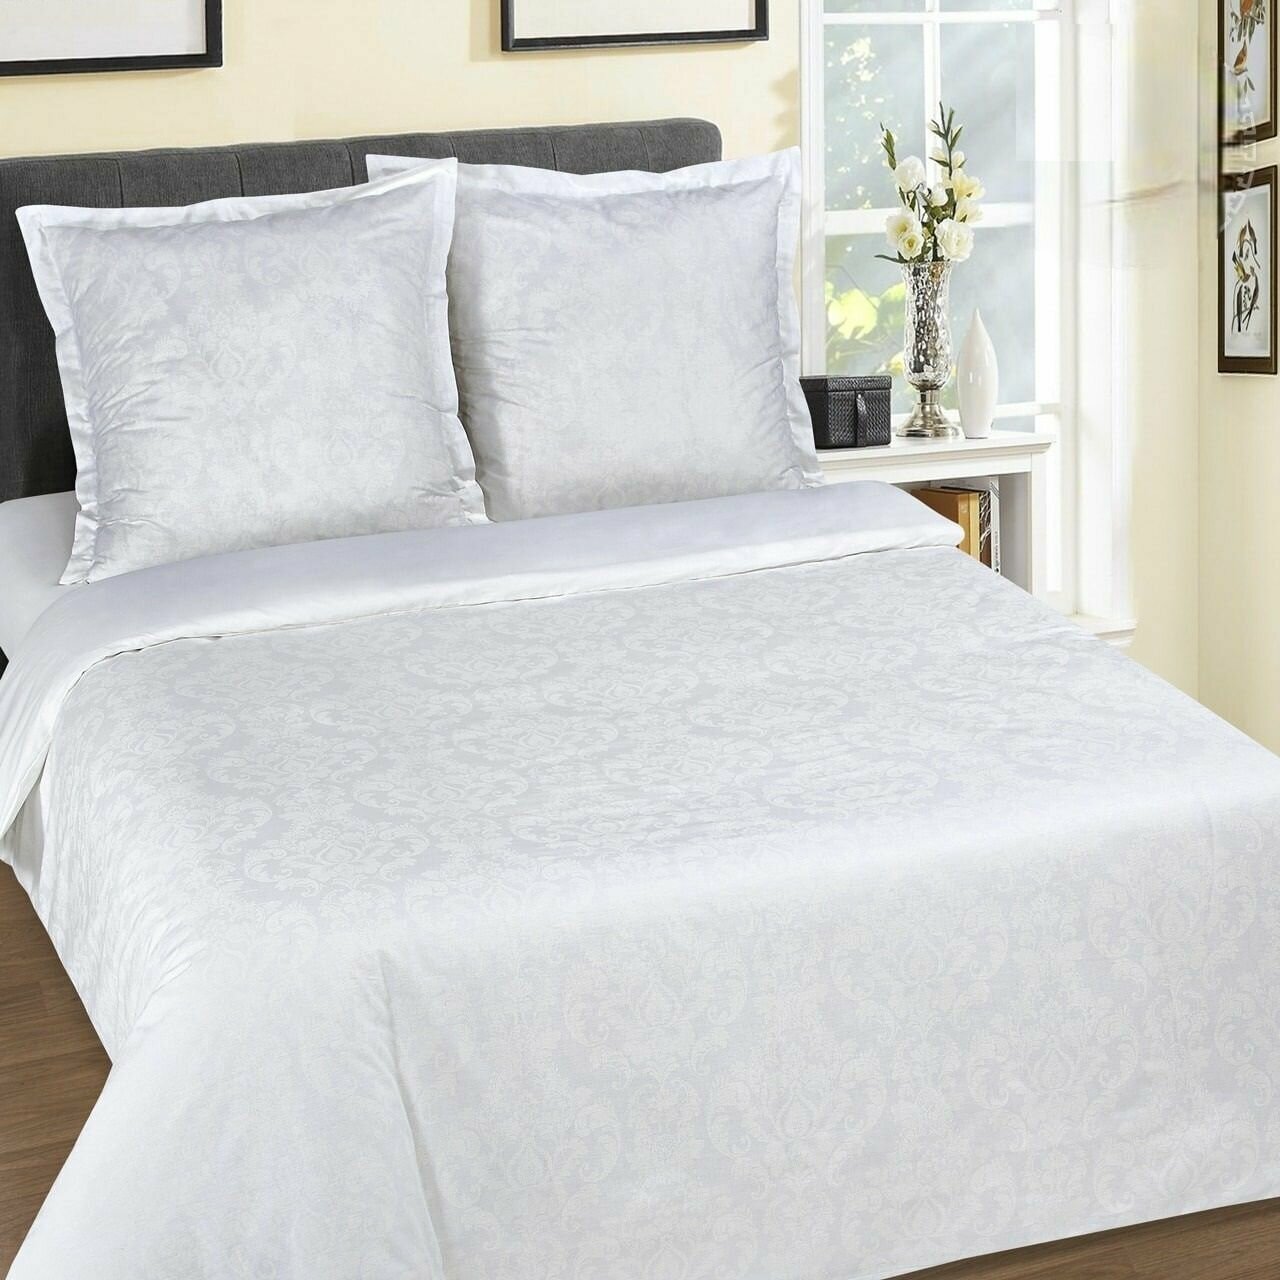 Двуспальный с европростынёй комплект постельного белья Византия белый DE LUXE поплин наволочки 70x70 см